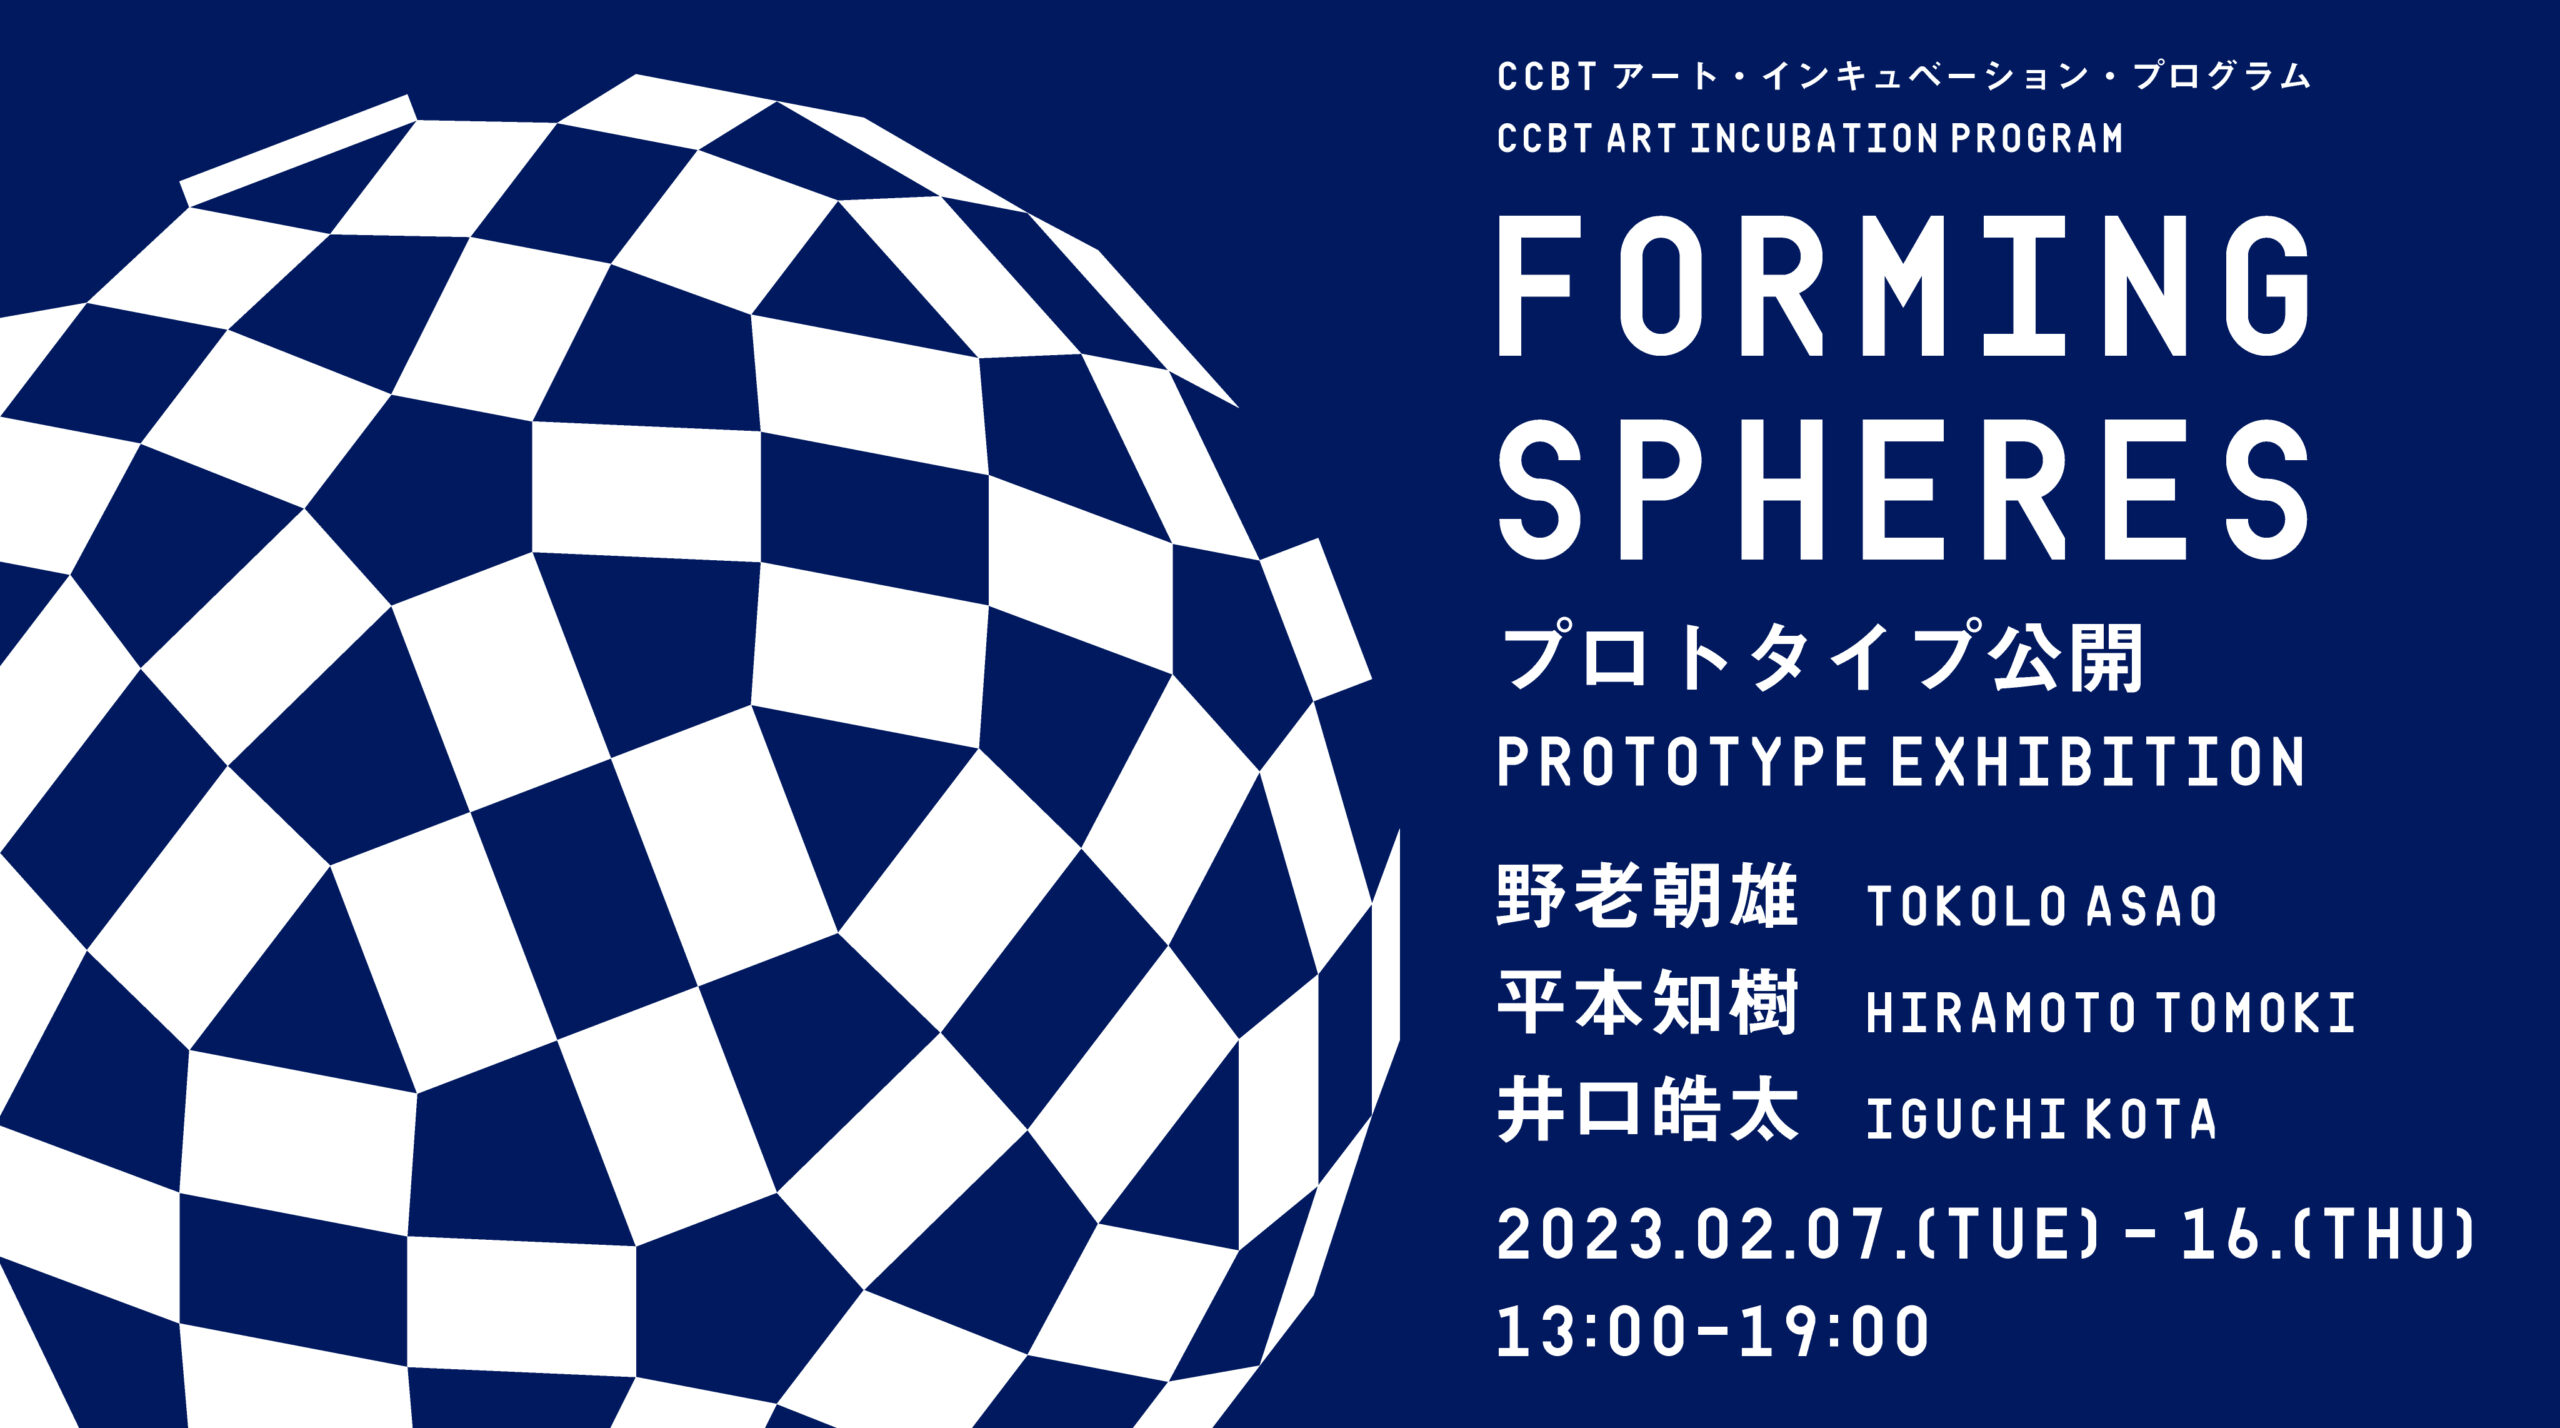 Tokolo Asao+Hiramoto Tomoki+Iguchi Kota “FORMING SPHERES” prototype unveiled